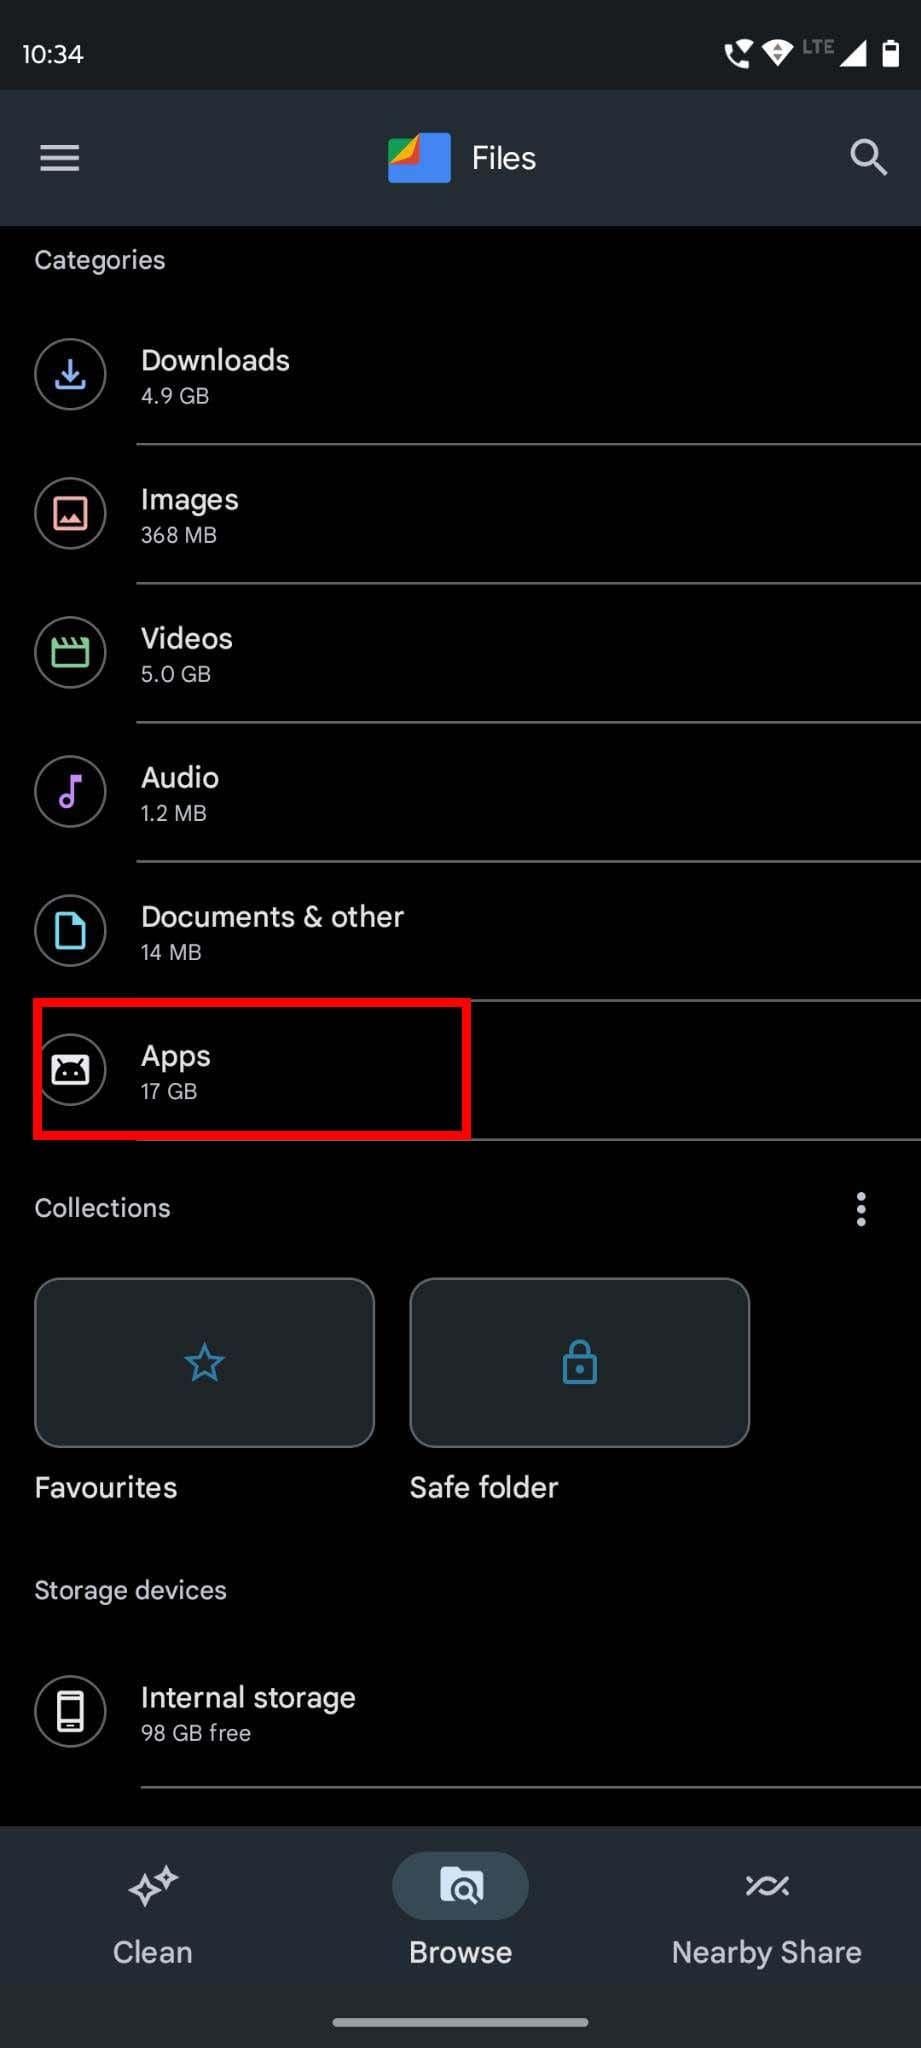 How to find hidden apps - Files app